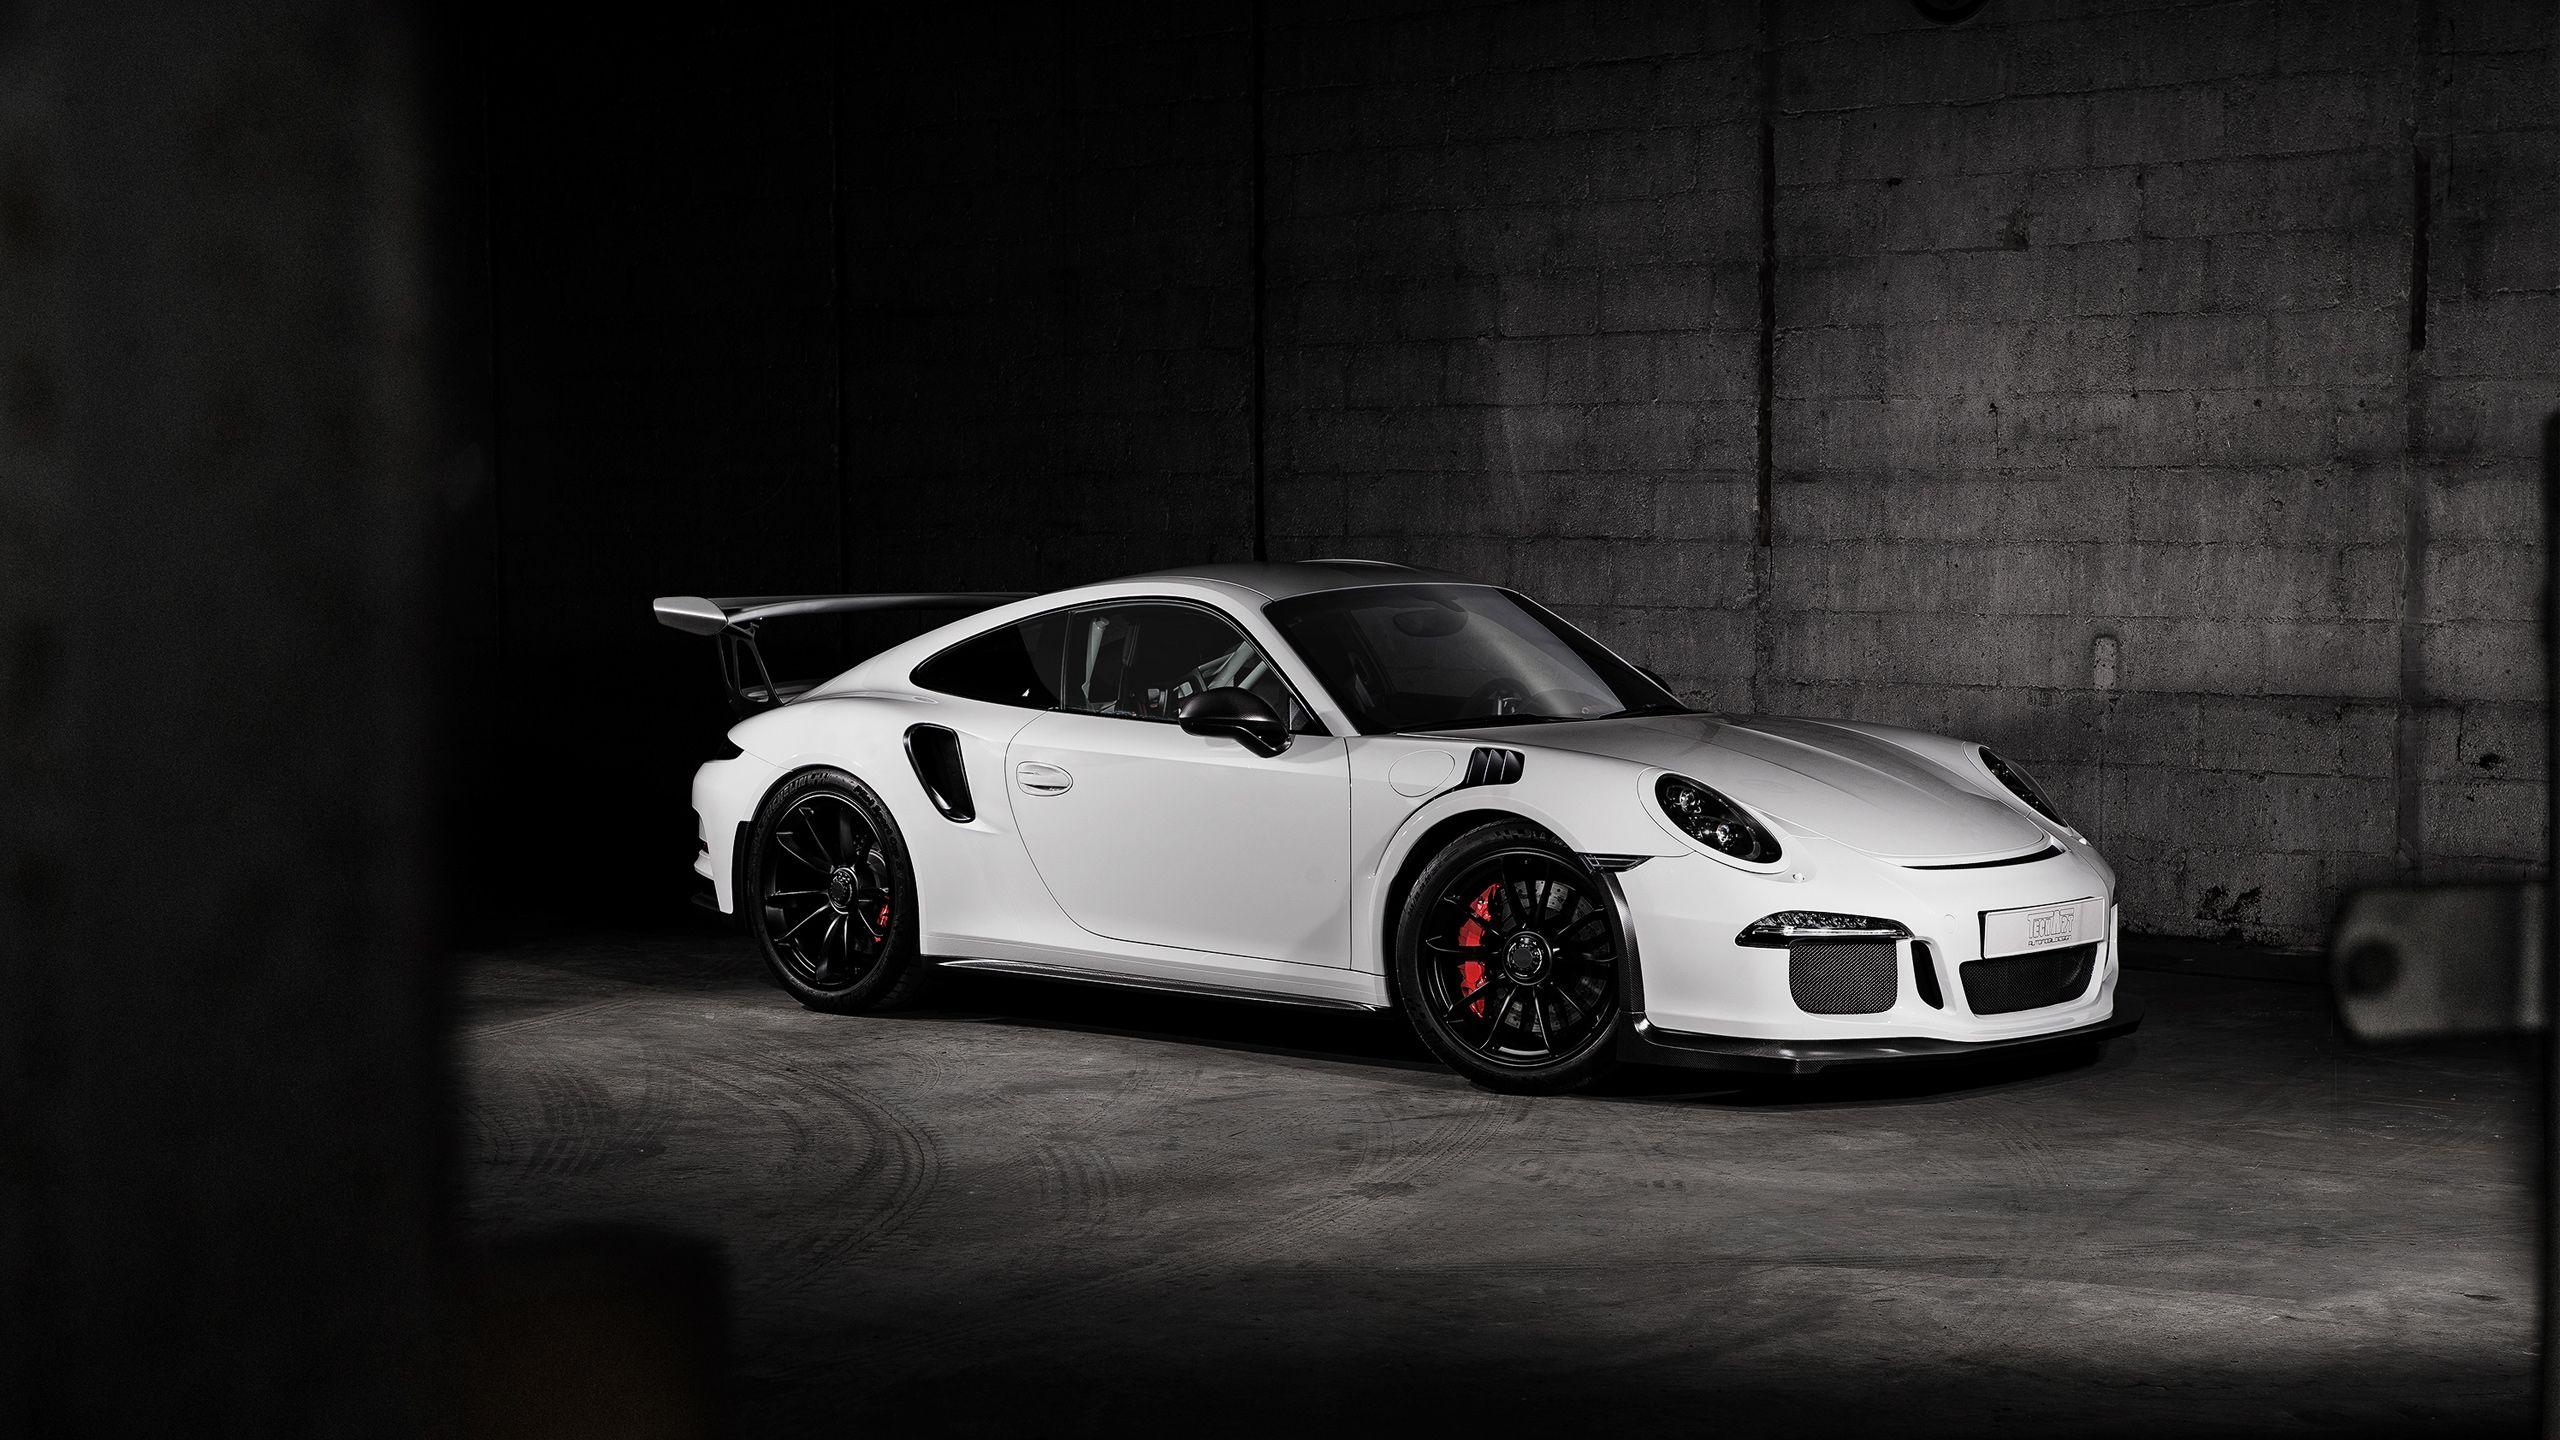 Porsche 911 GT3 RS Carbon TechArt Wallpaper. HD Car Wallpaper